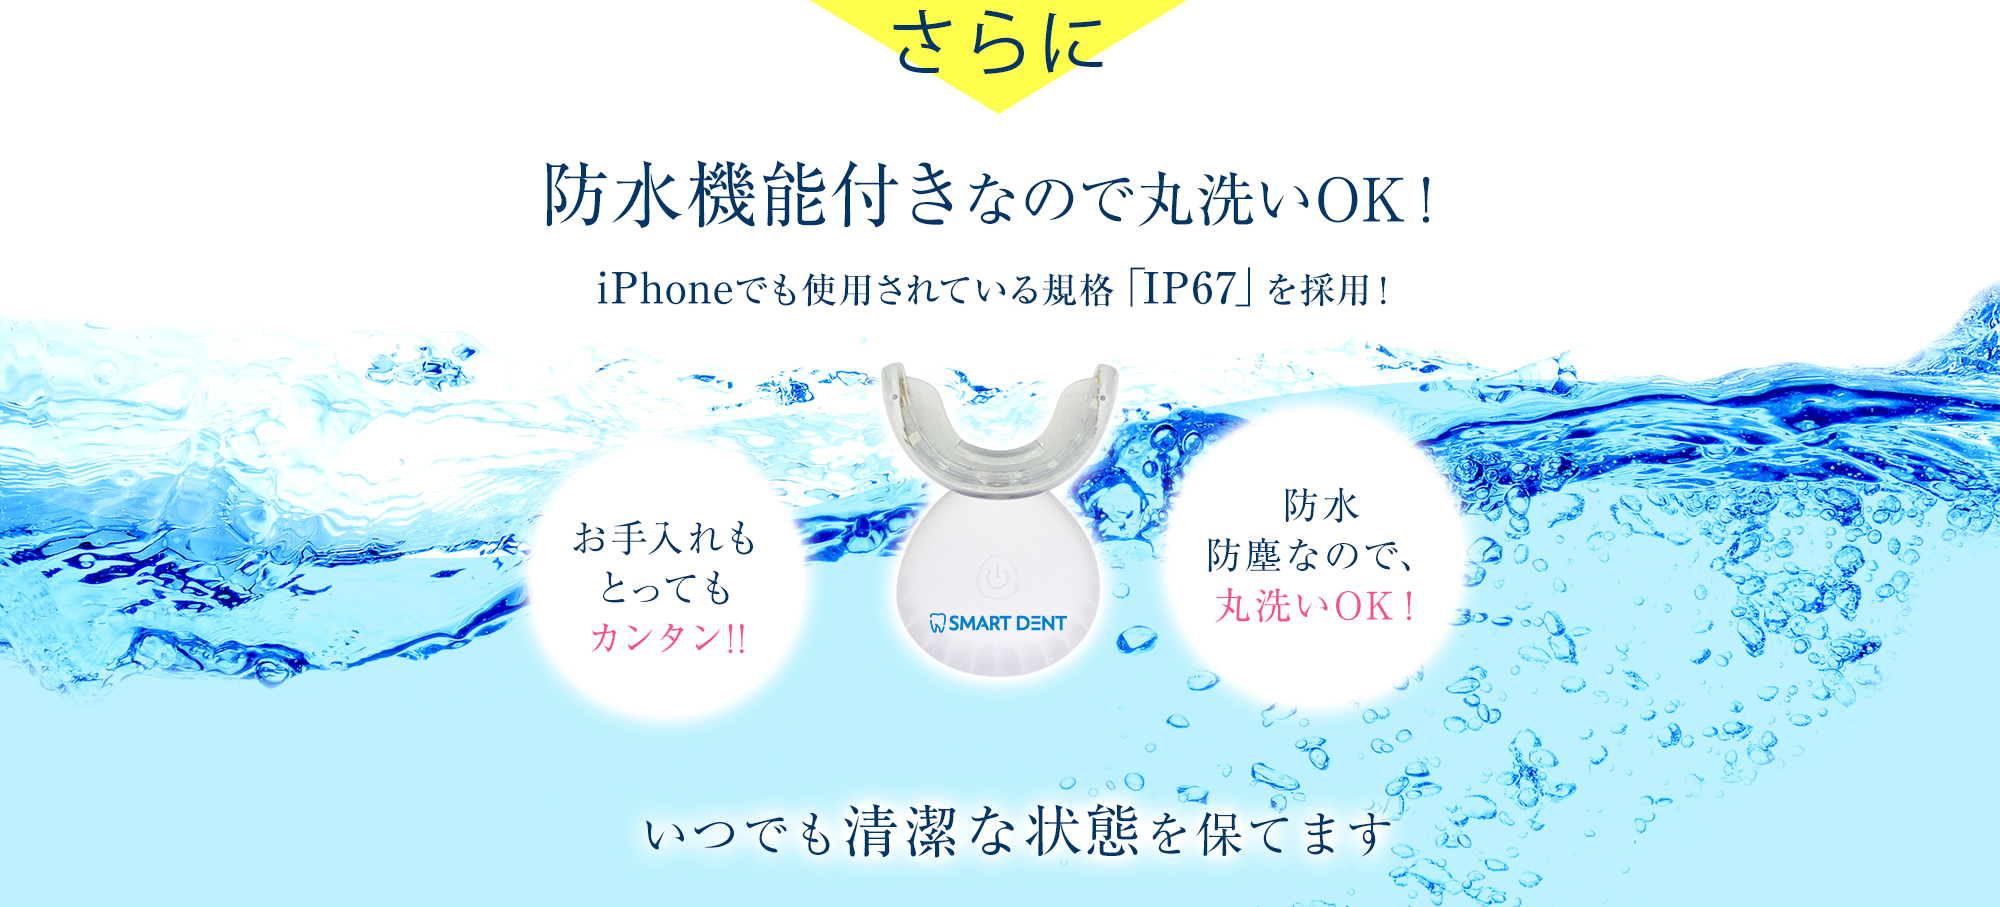 さらに防水機能付きなので丸洗いOK！iPhoneでも使用されている規格「IP67 」を採用！防水　防塵なので、丸洗いOK！いつでも清潔な状態を保てます